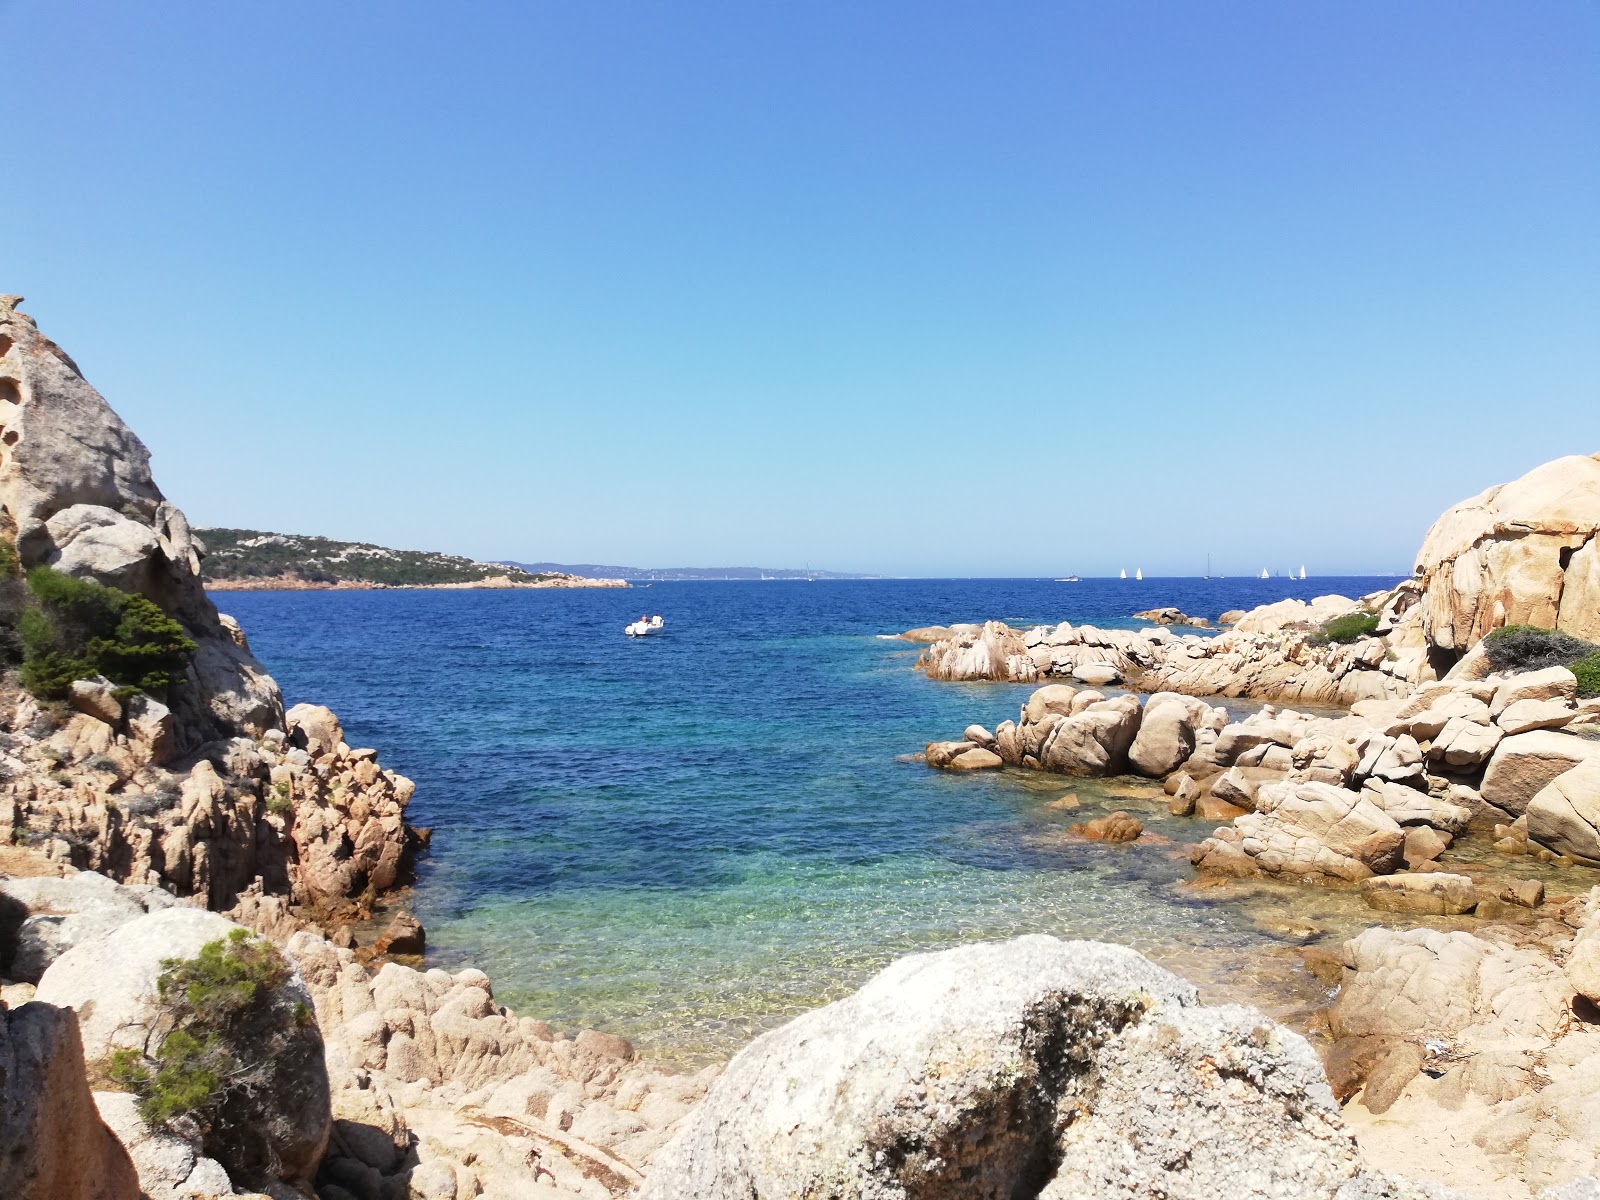 Photo of Spiaggia Della Contessa with blue pure water surface